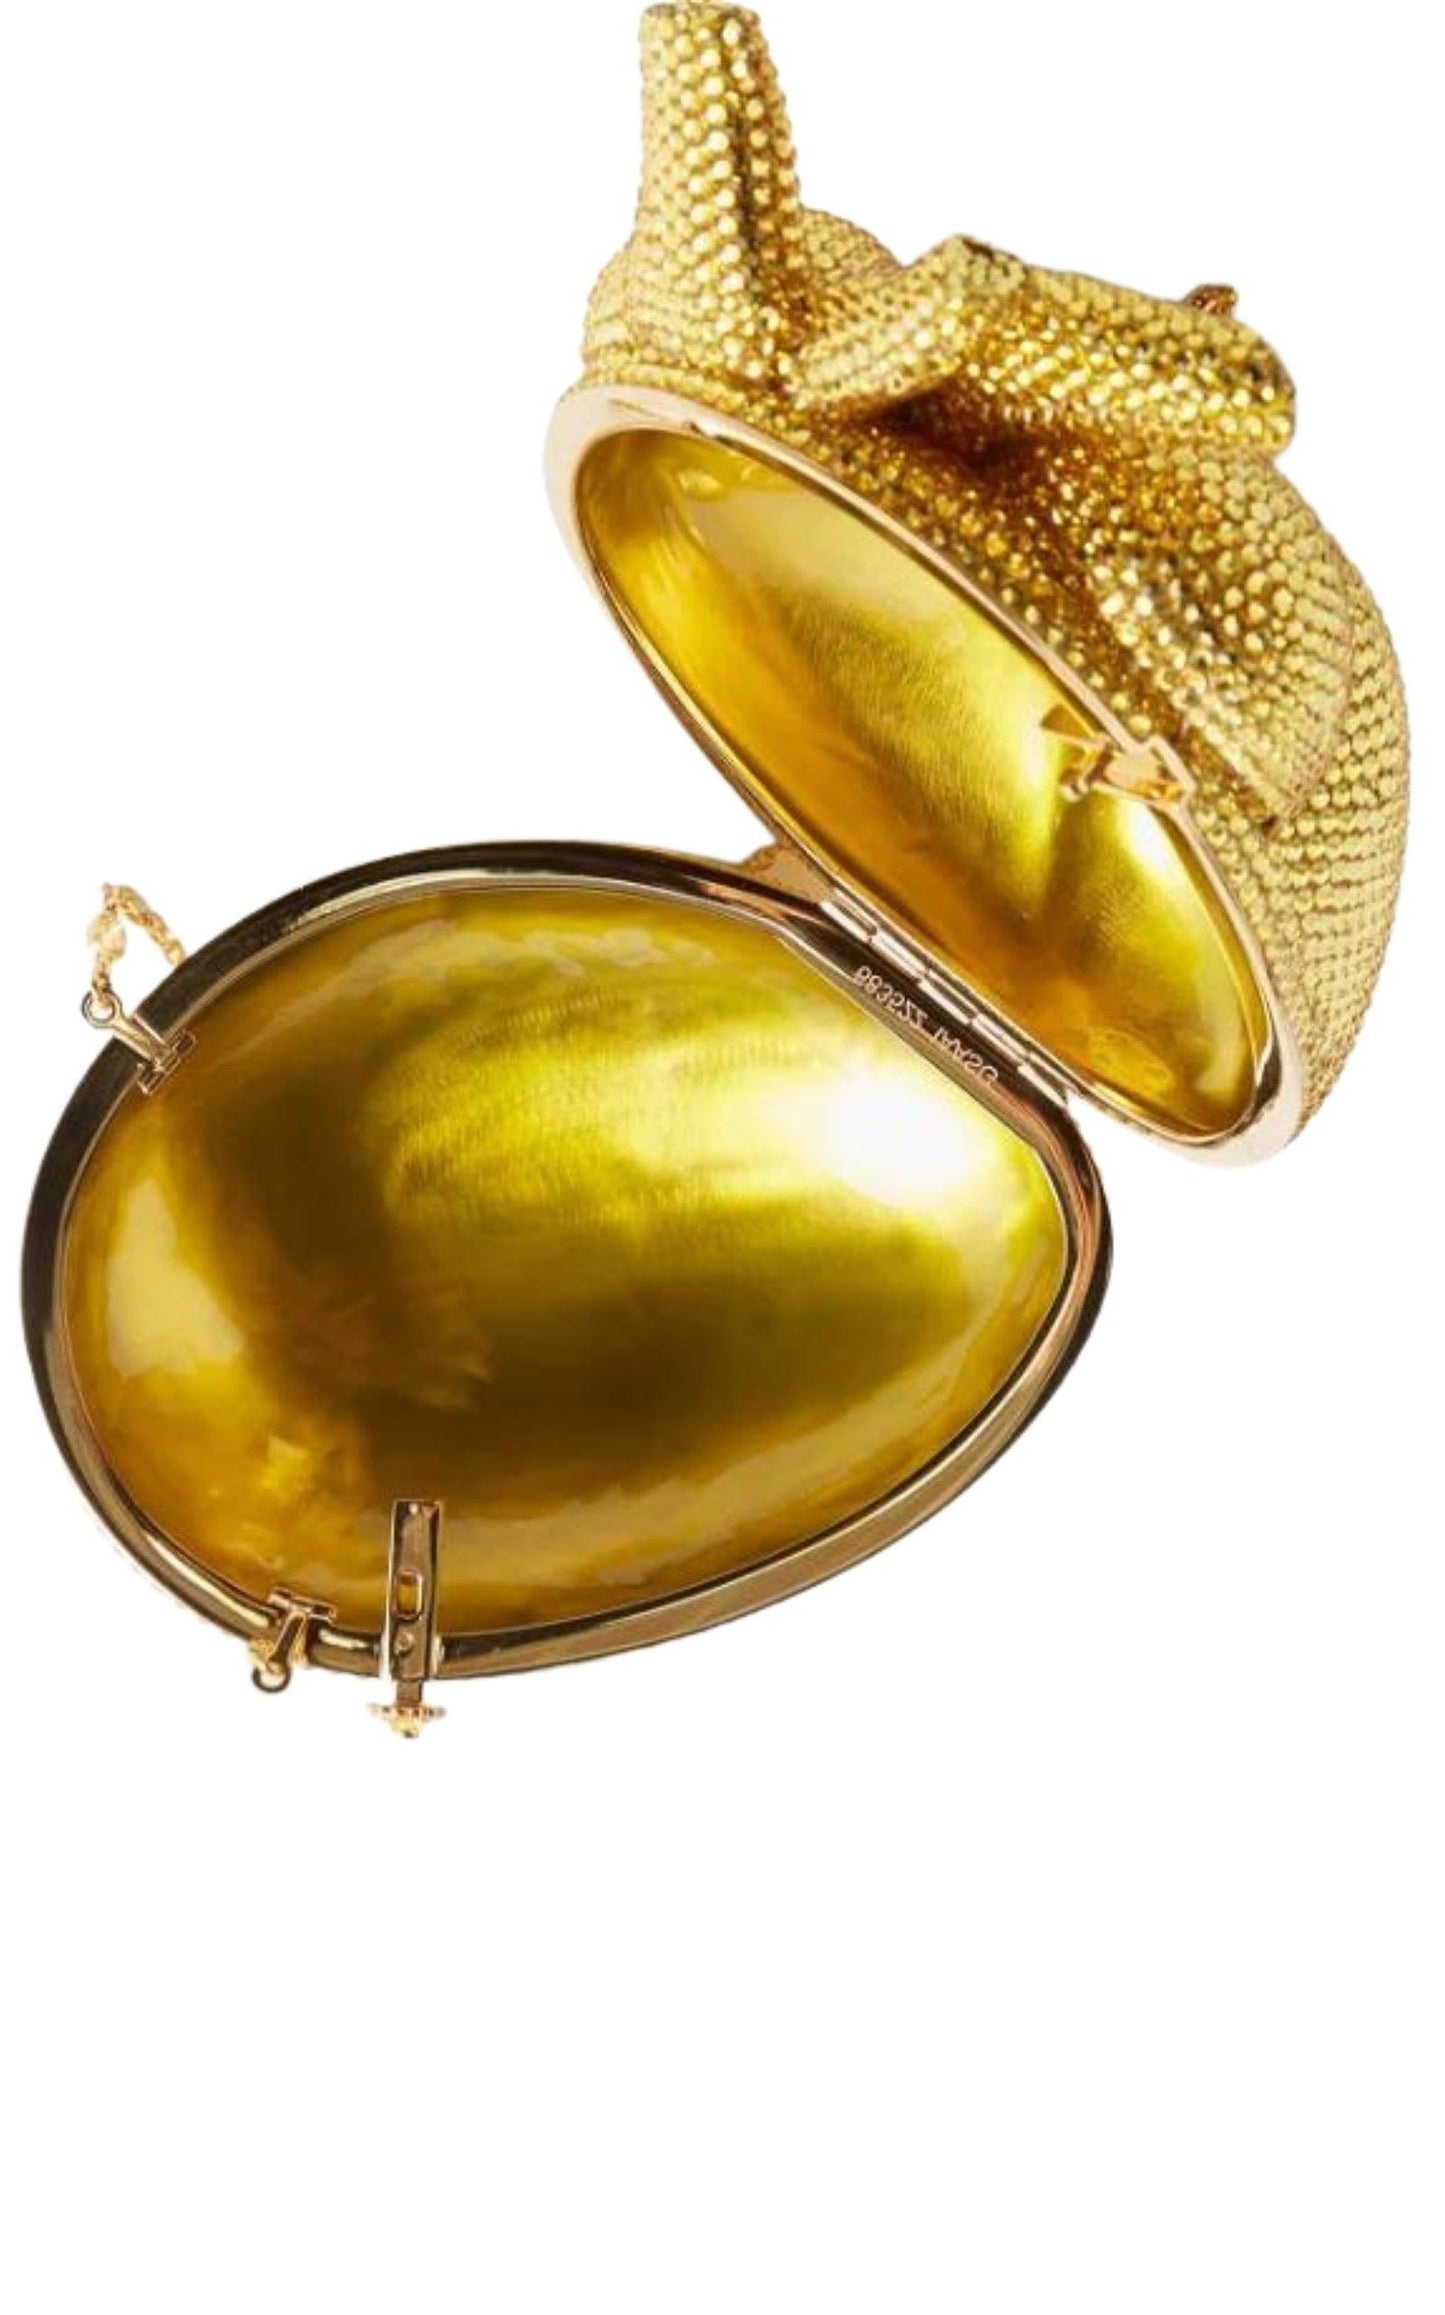 Gold Broadway Heart Crystal-Embellished Clutch Bag